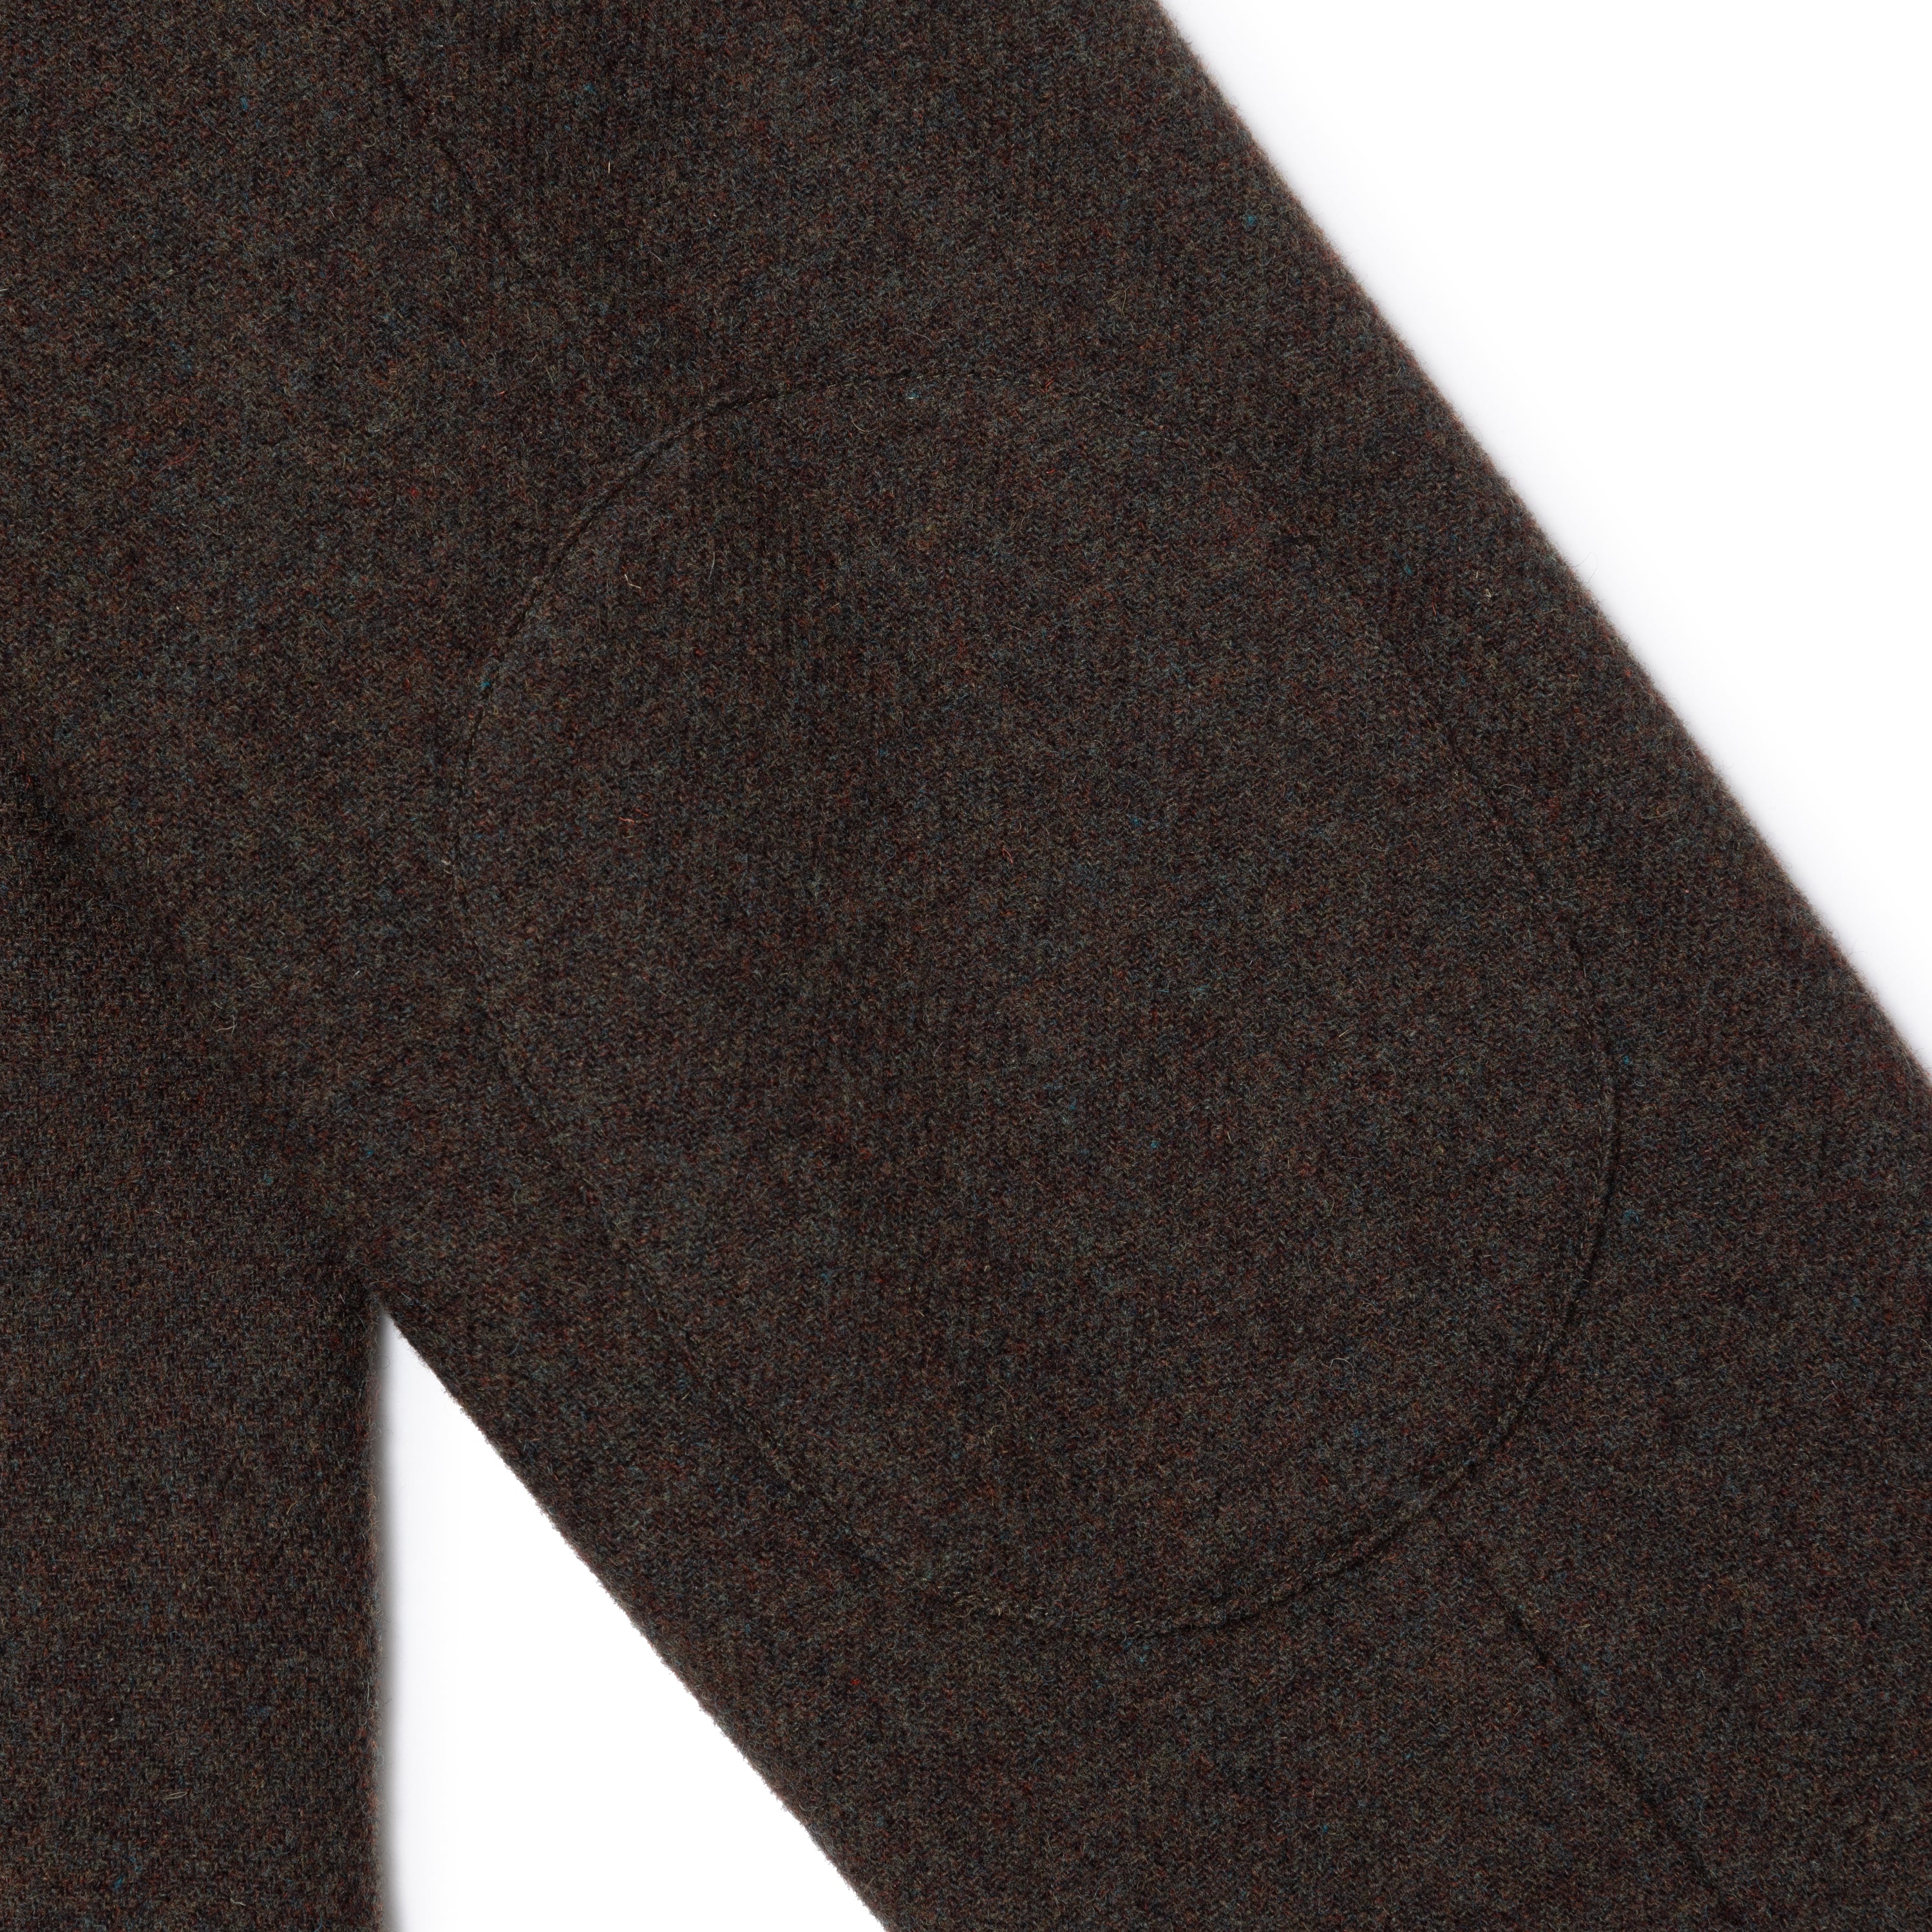 Wool Tweed Jacket[KHAKI]